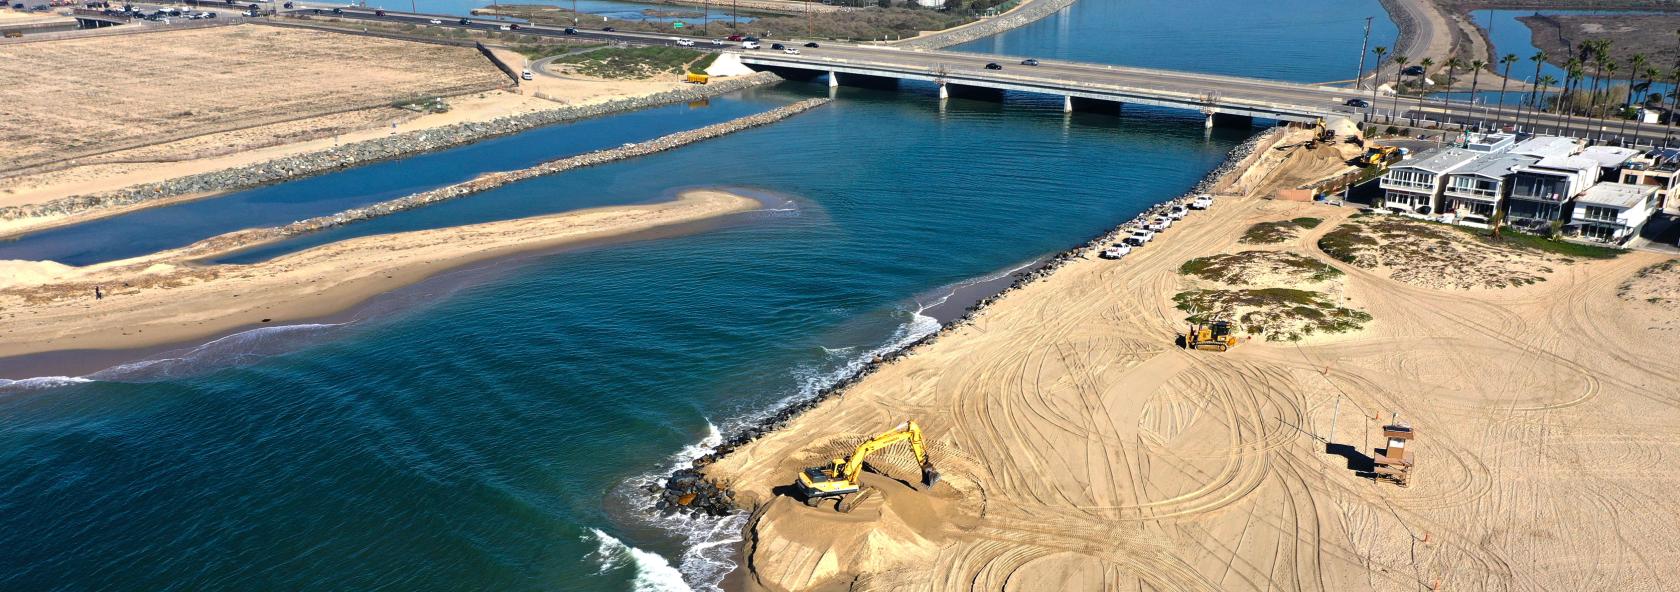 Santa Ana River Outlet Sand Management